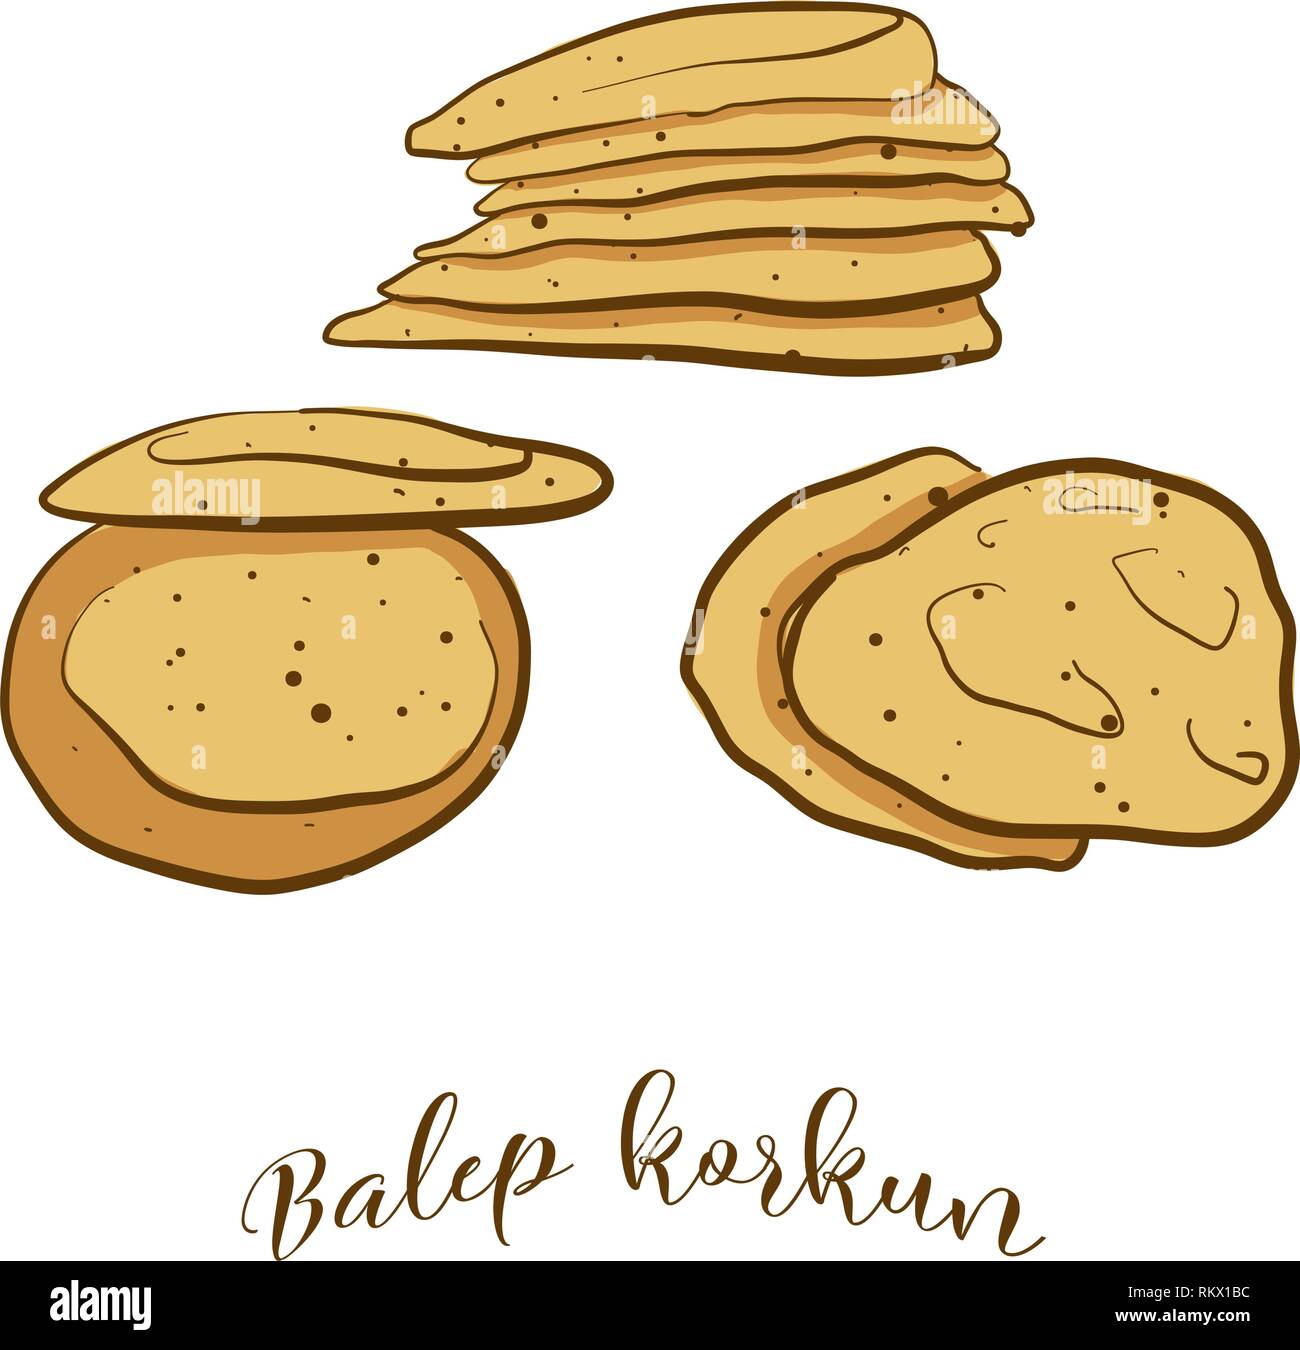 Farbige Skizzen von Balep korkun Brot. Vektor Zeichnung von Fladenbrot Essen, in der Regel in Tibet bekannt. Farbige Brot Abbildung Serie. Stock Vektor